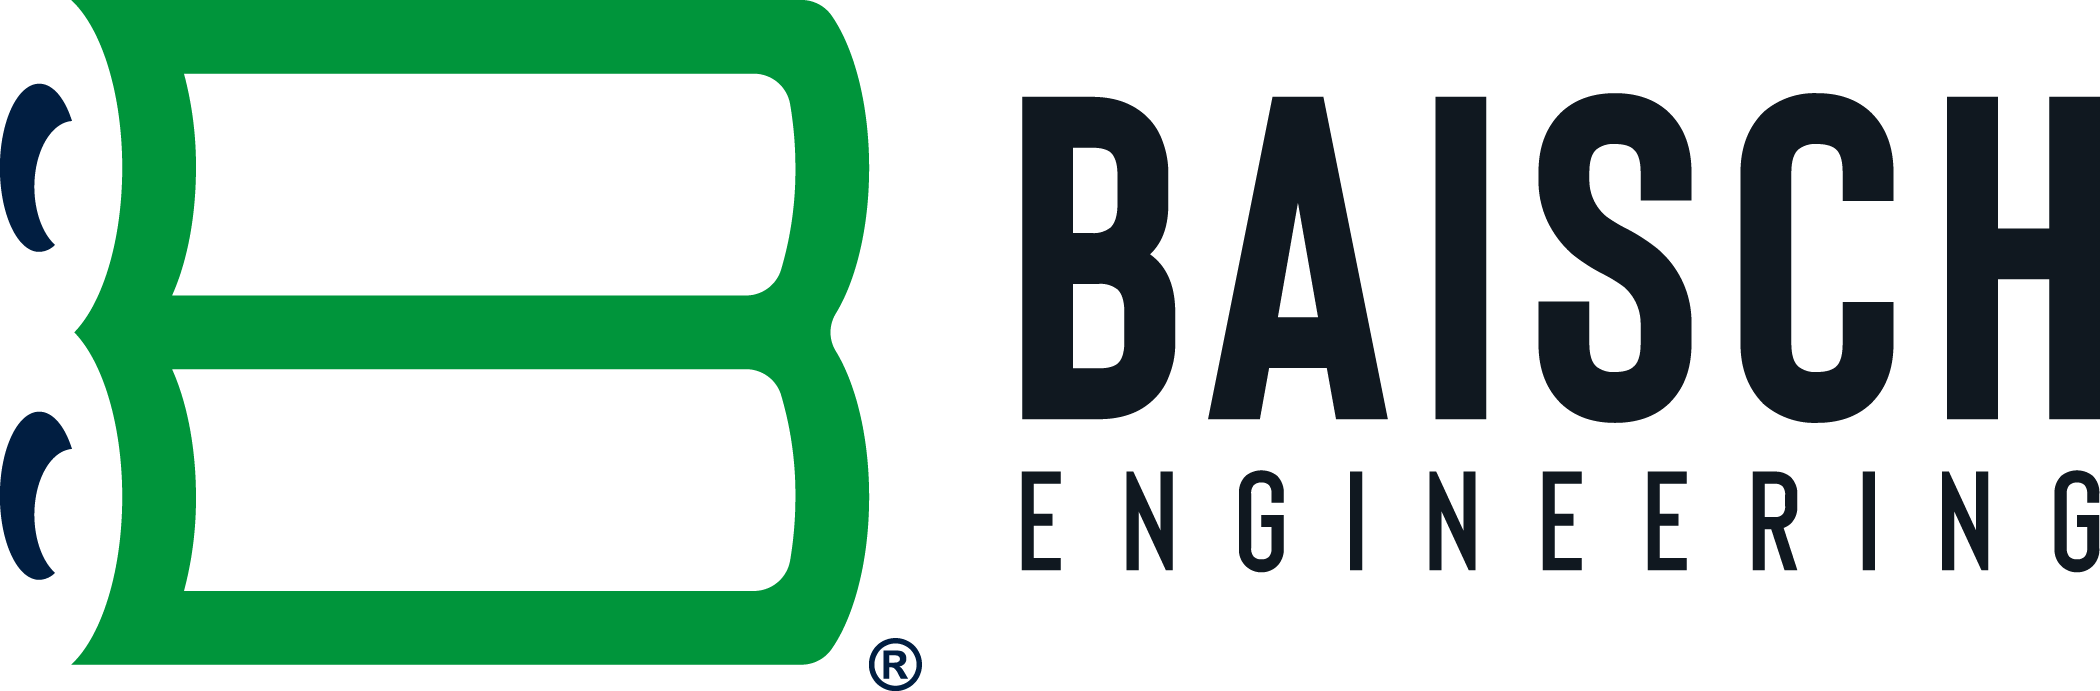 Baisch Engineering